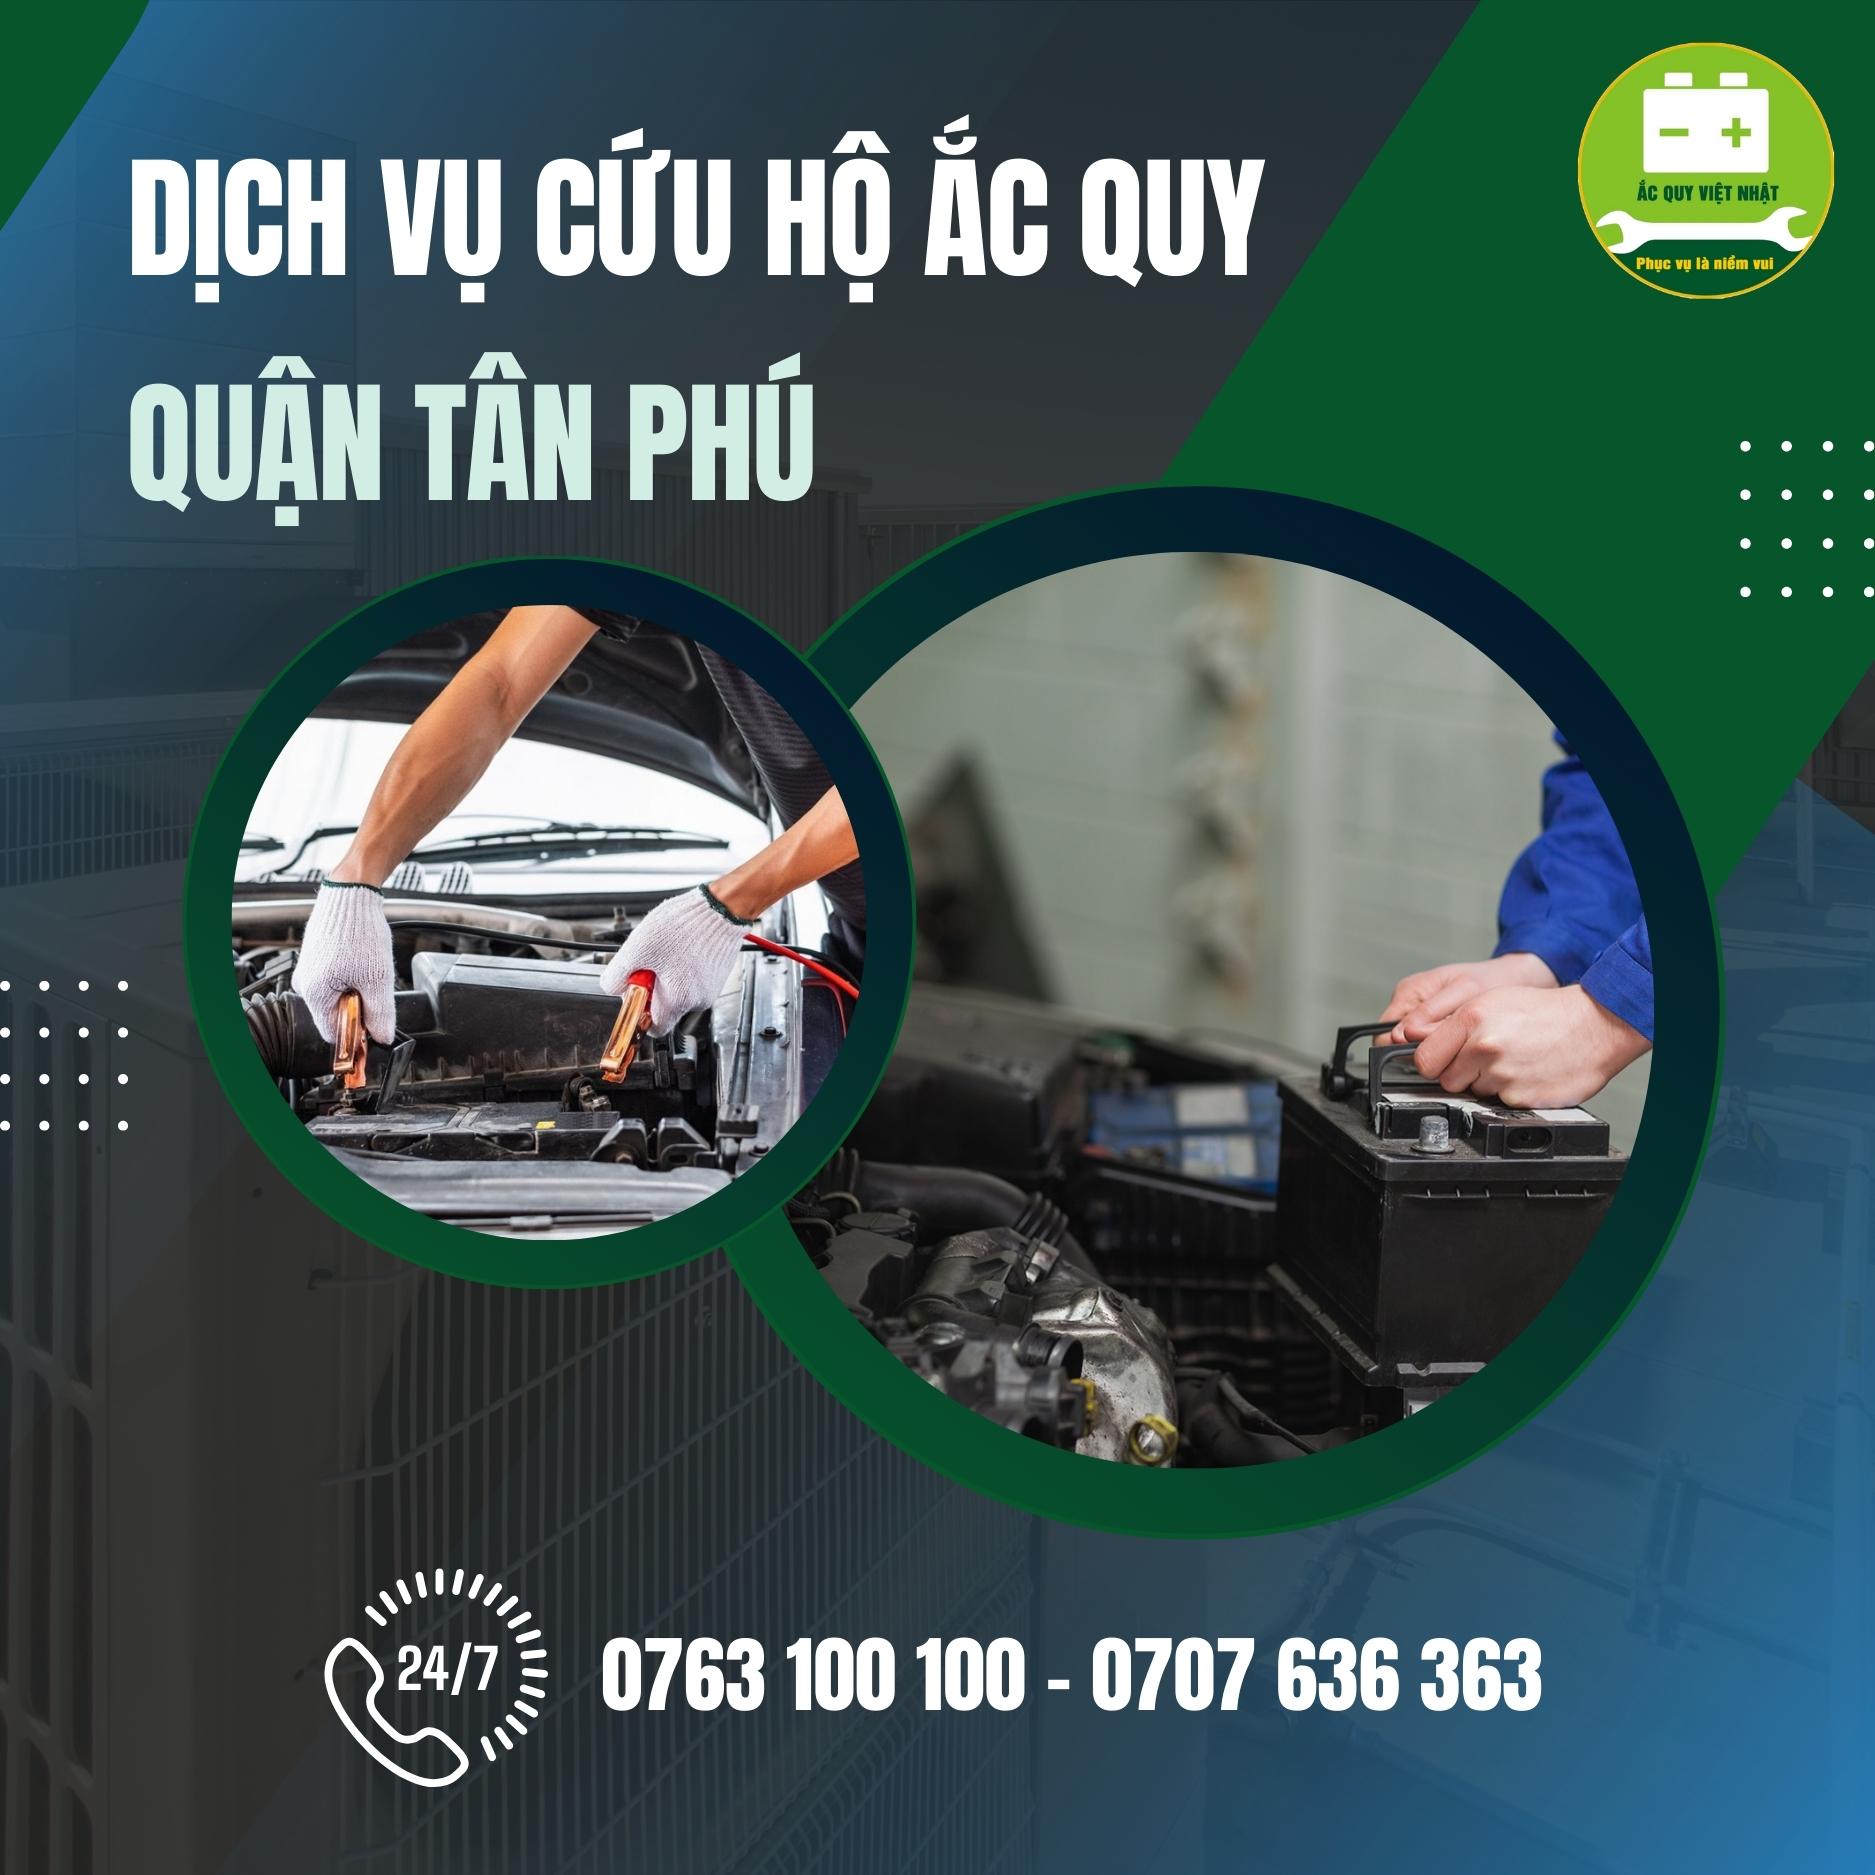 Dịch vụ cứu hộ ắc quy quận Tân Phú của Việt Nam